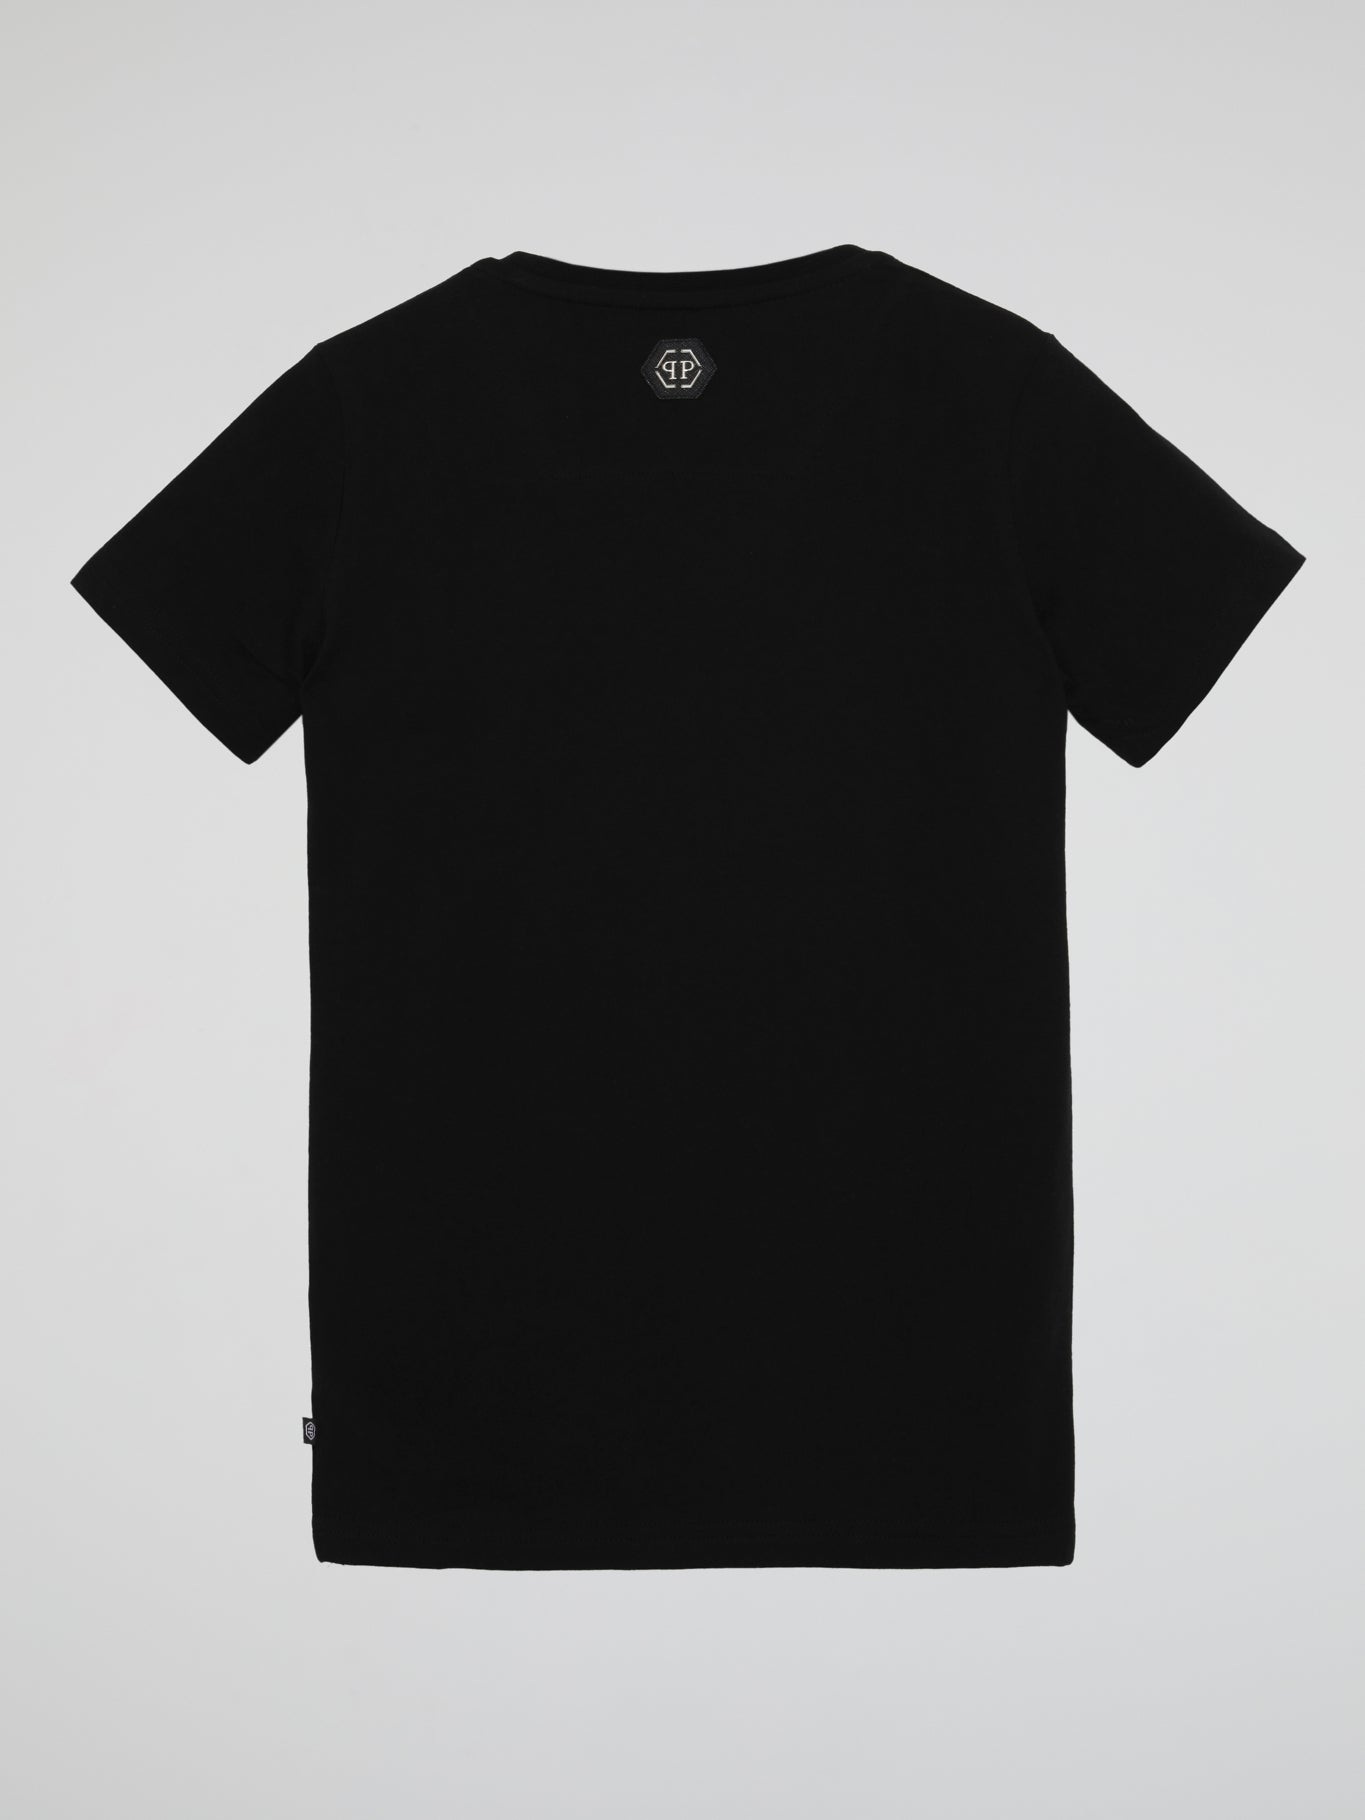 Black Embellished Studded Logo T-Shirt (Kids)